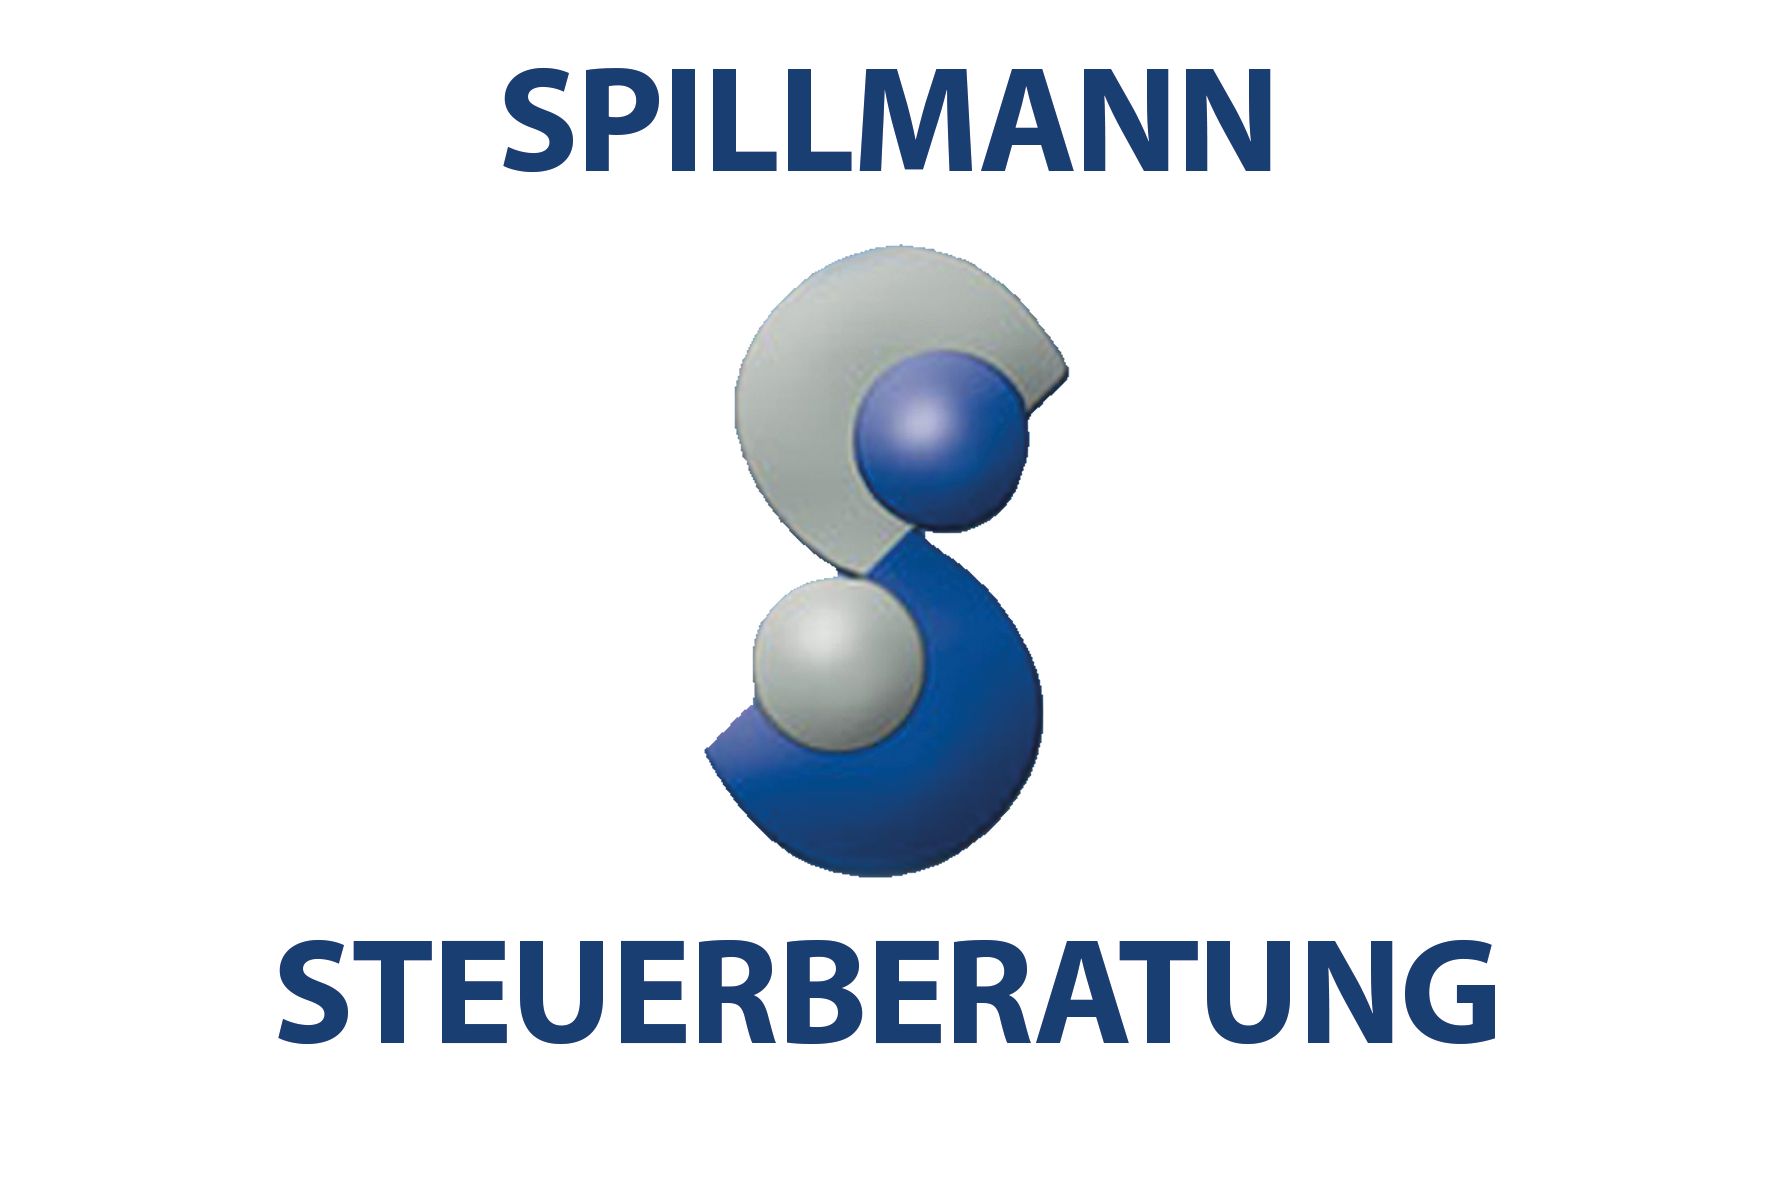 Spillmann Steuerberatungsgesellschaft mbH